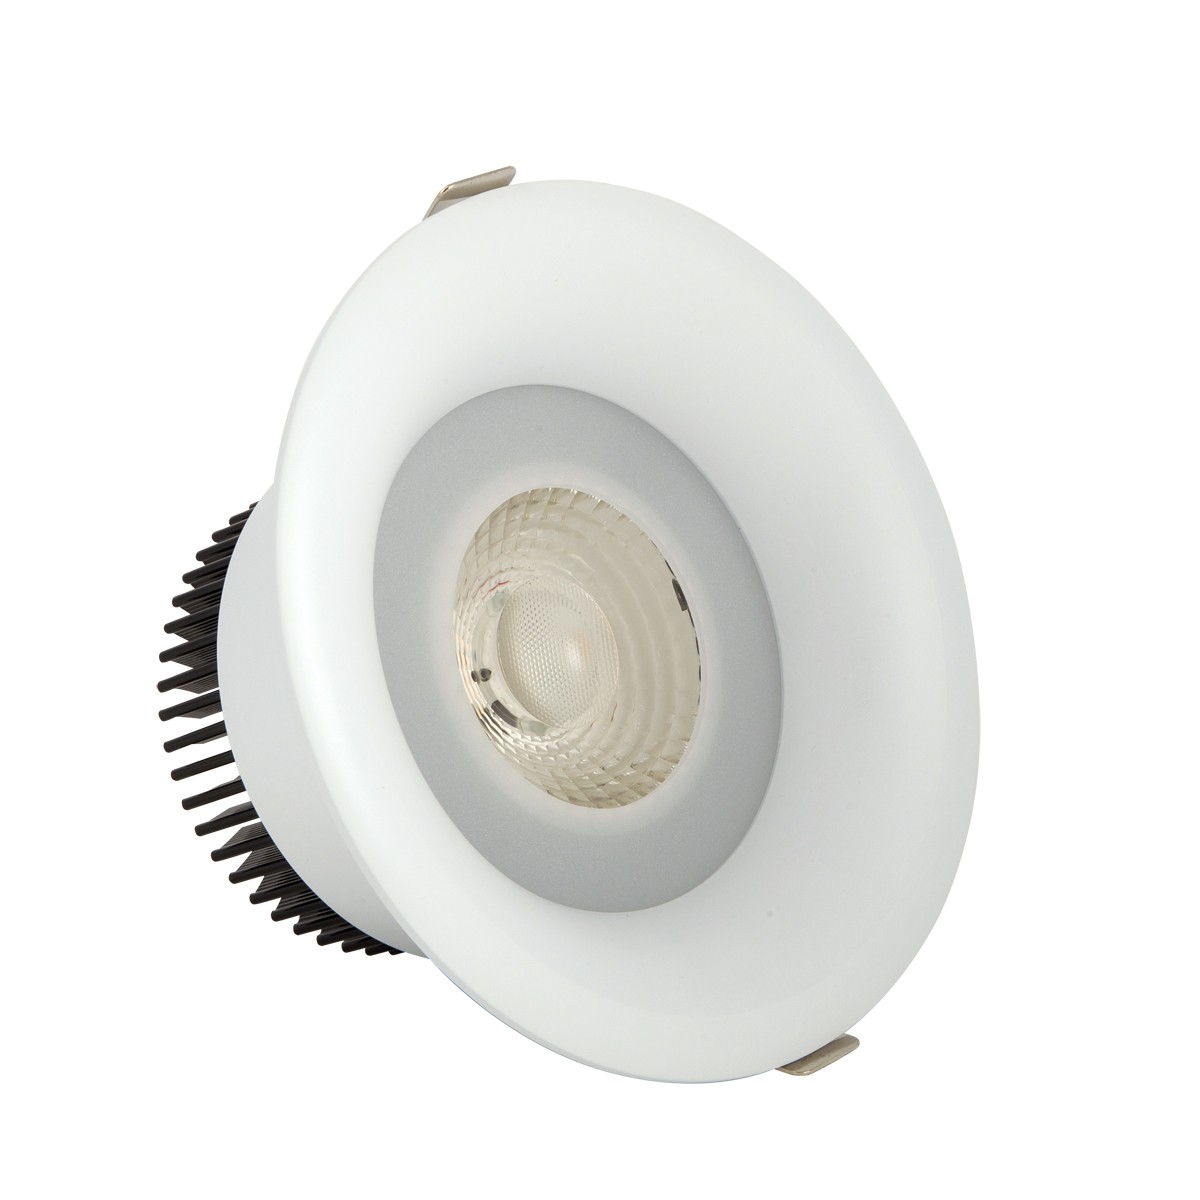 Φωτιστικό downlight στρογγυλό  λευκού χρώματος 15W 3000K 1350 lumen με ενσωματωμένο λαμπτήρα 36-40D VK/04149/W/W/36